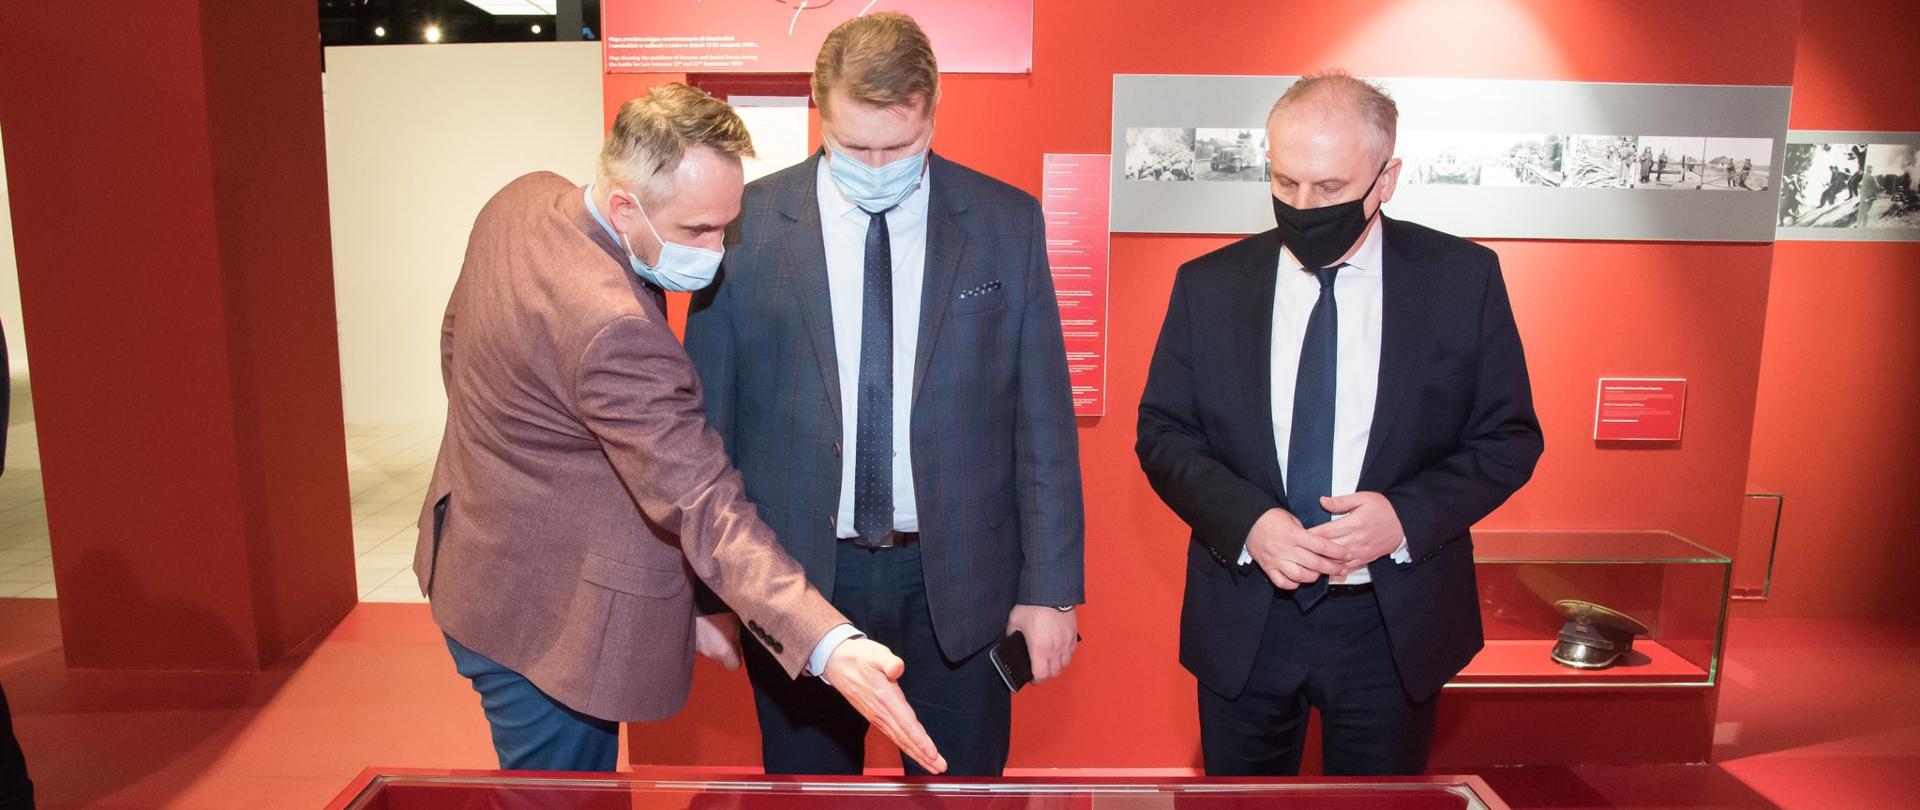 wizyta ministra w muzeum II WŚ ogląda wraz z przewodnikiem fragmenty odzieży